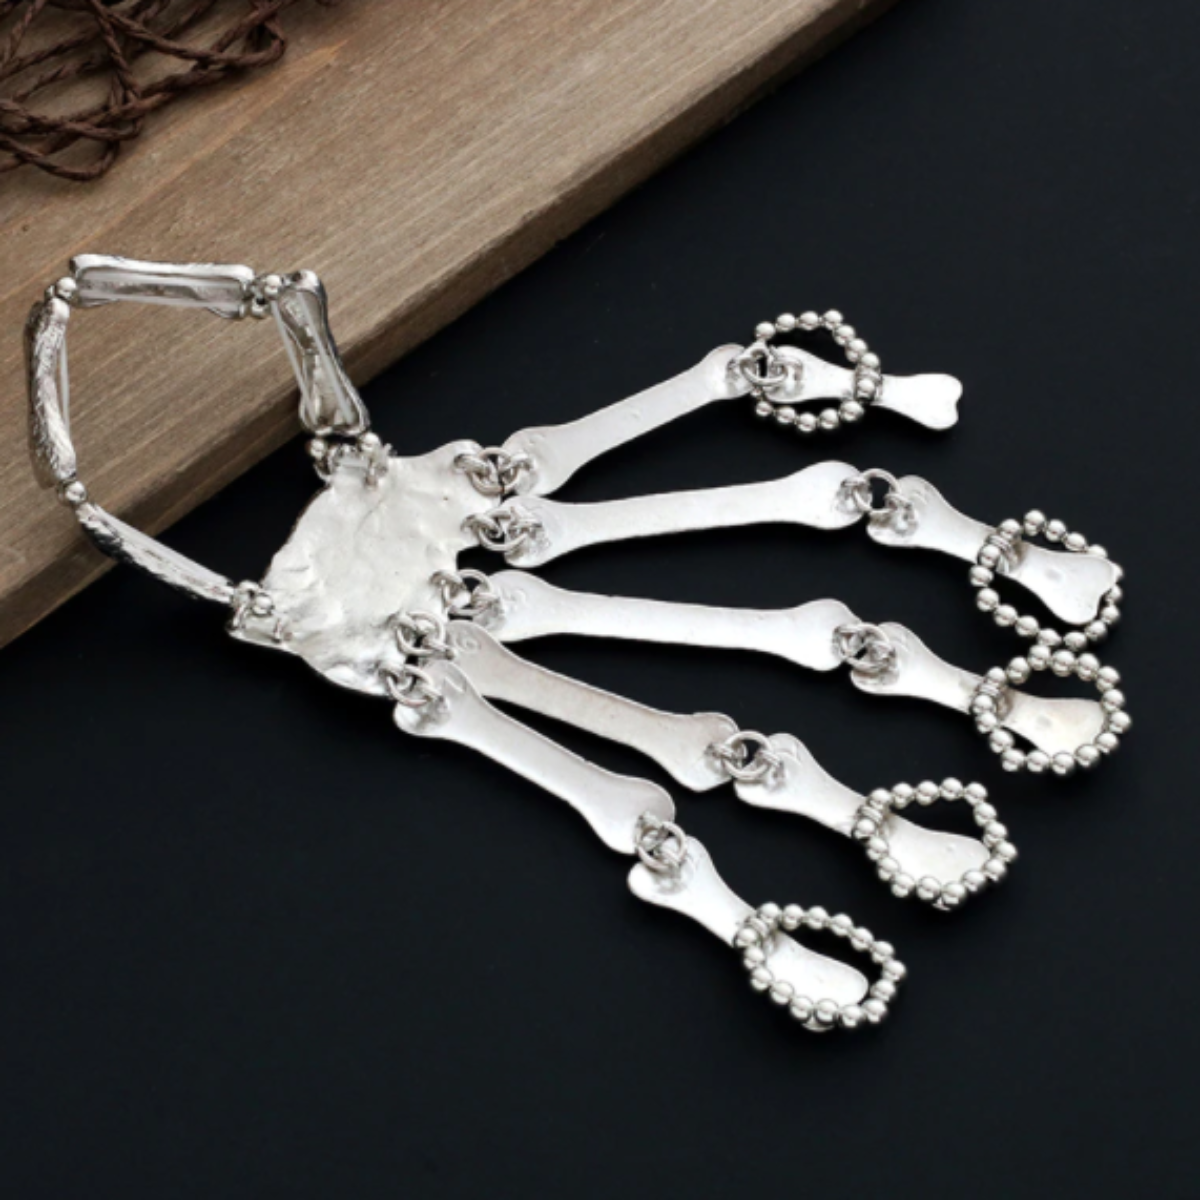 Skeleton Bone Hand Bracelet